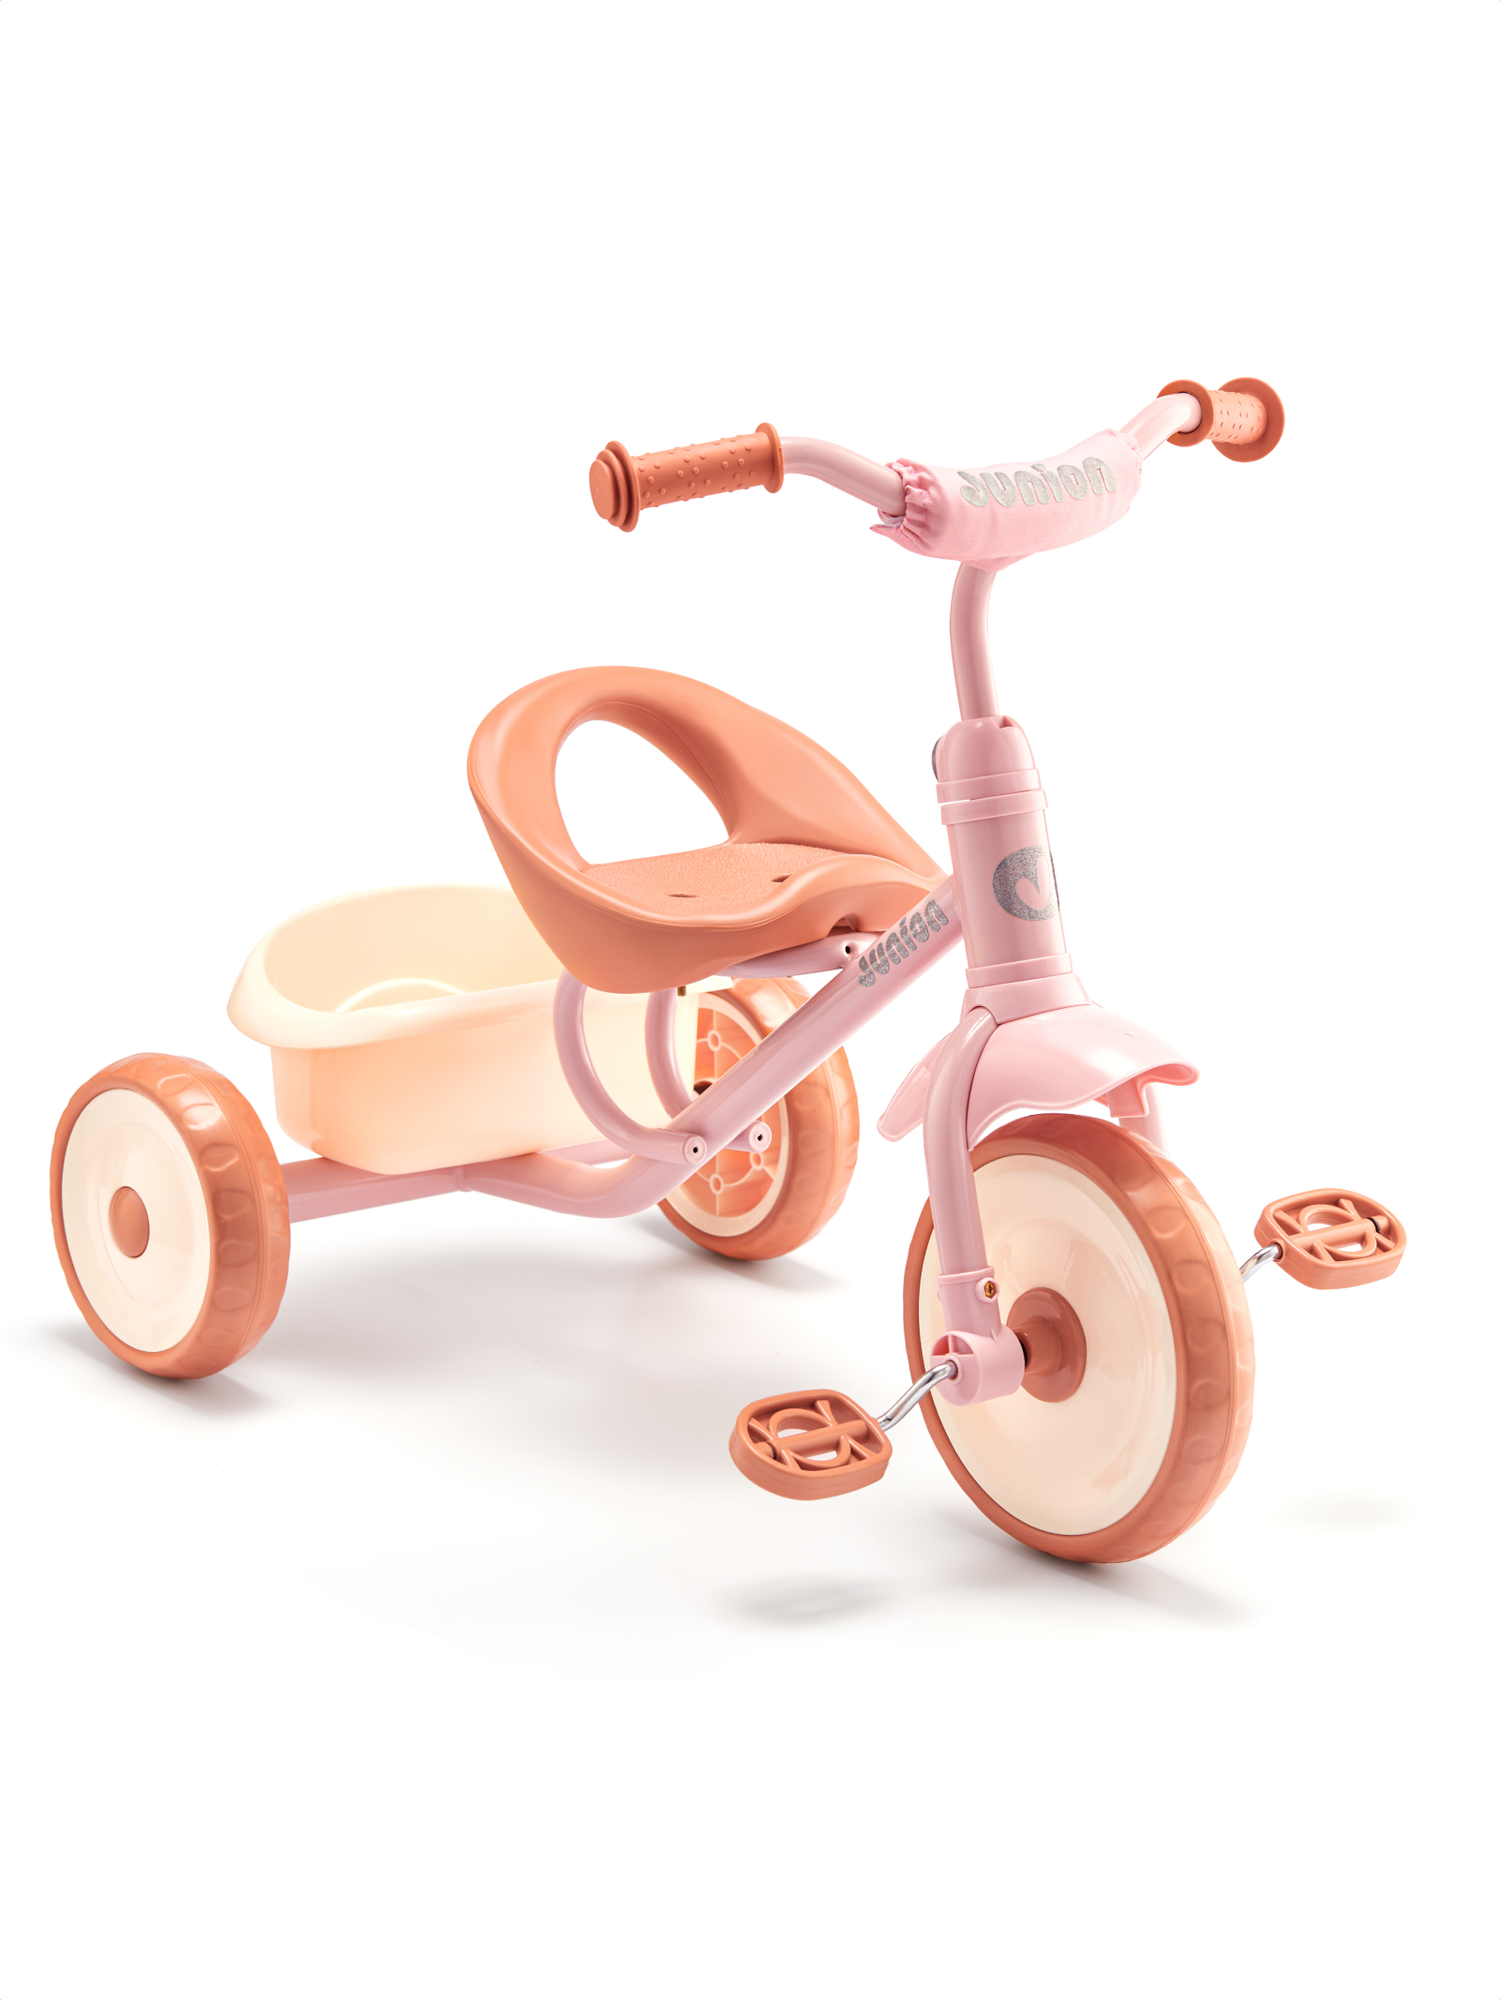 Детский трехколесный велосипед Junion WINDI, модель XG112114-3, цвет: pink